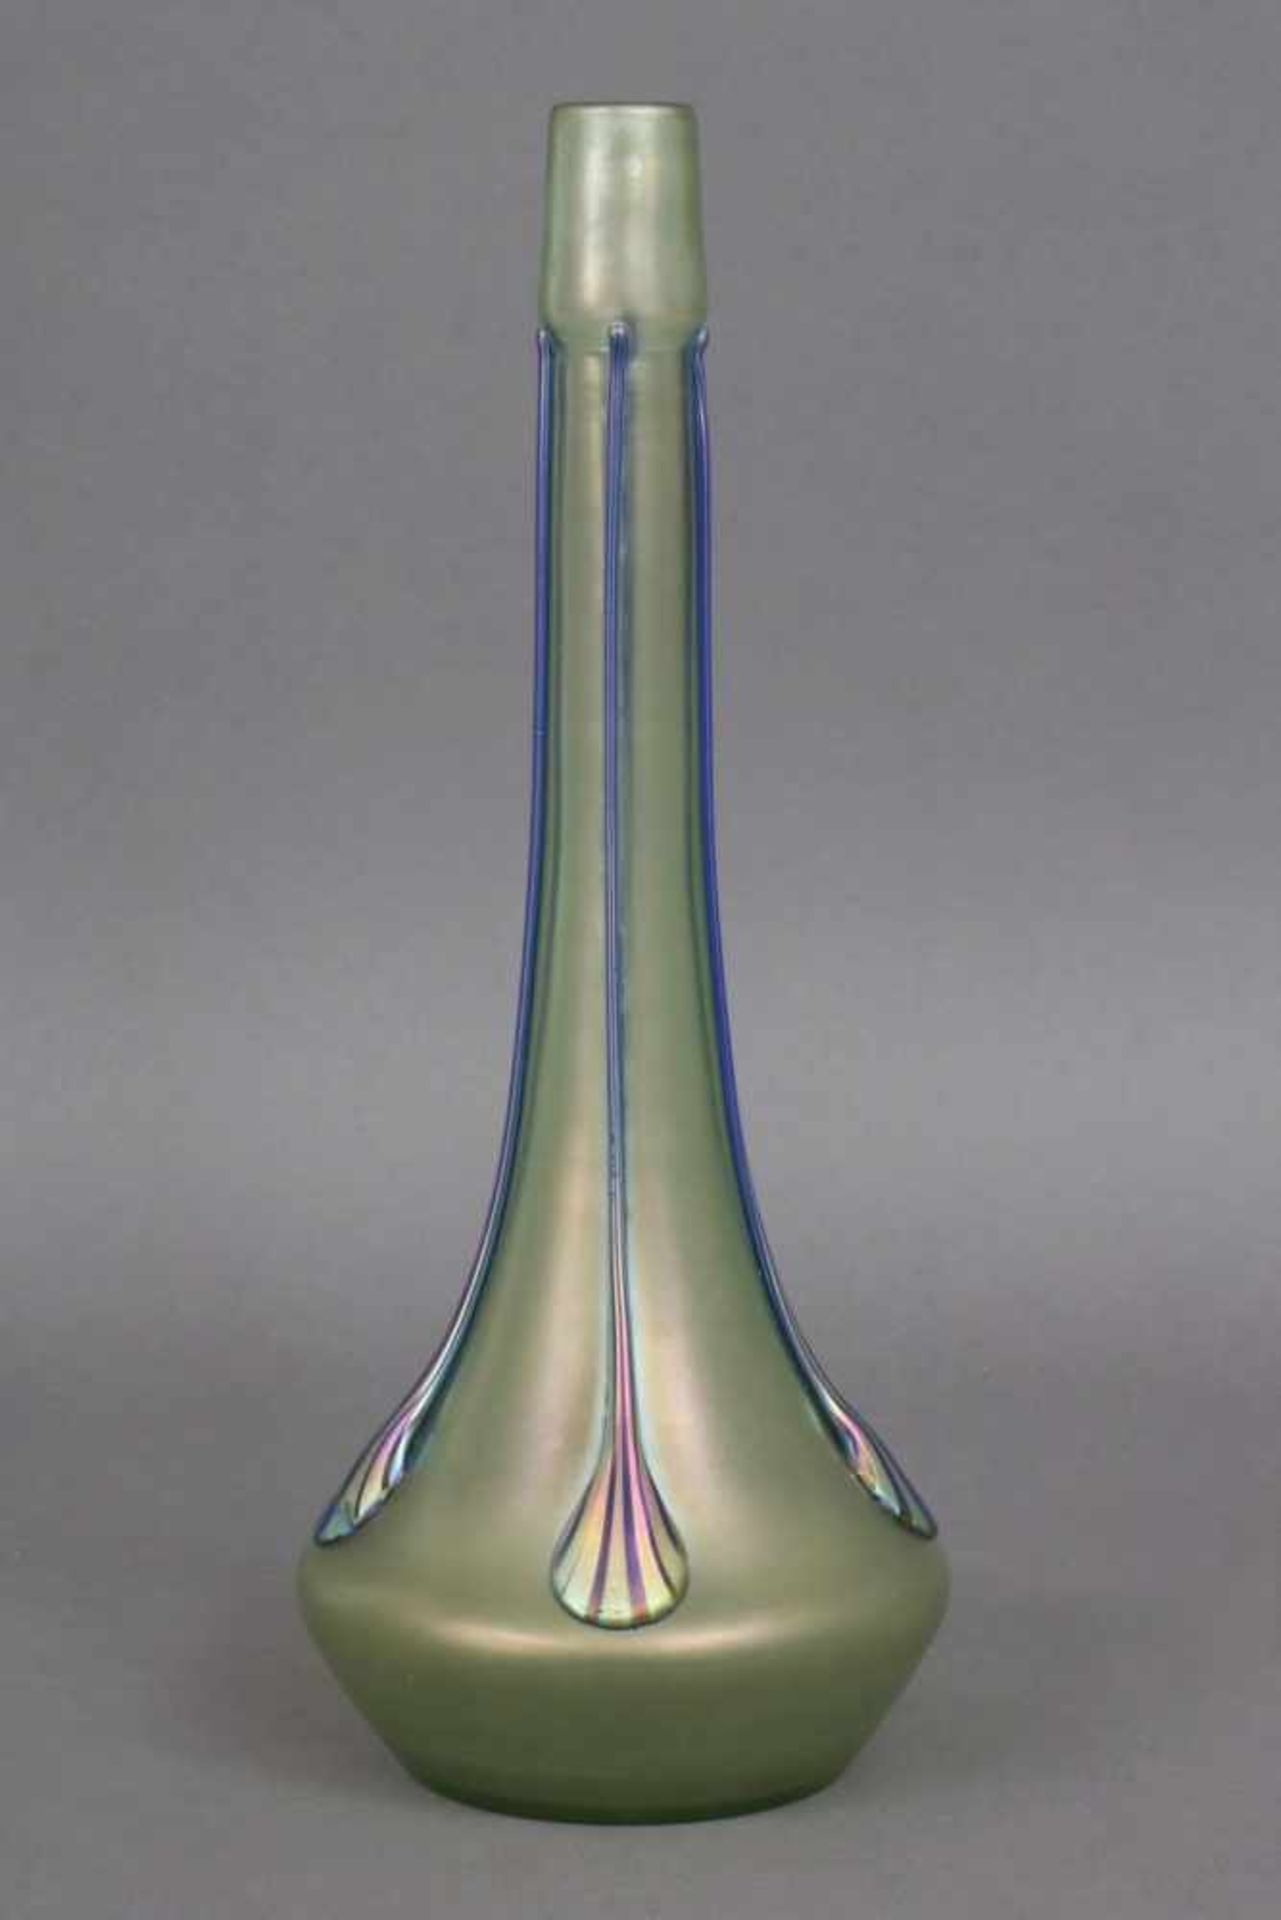 Wohl PALLME KÖNIG Jugendstil-Vaseleicht irisierendes Glas, blaue Fadenaufschmelzungen mit - Bild 2 aus 2